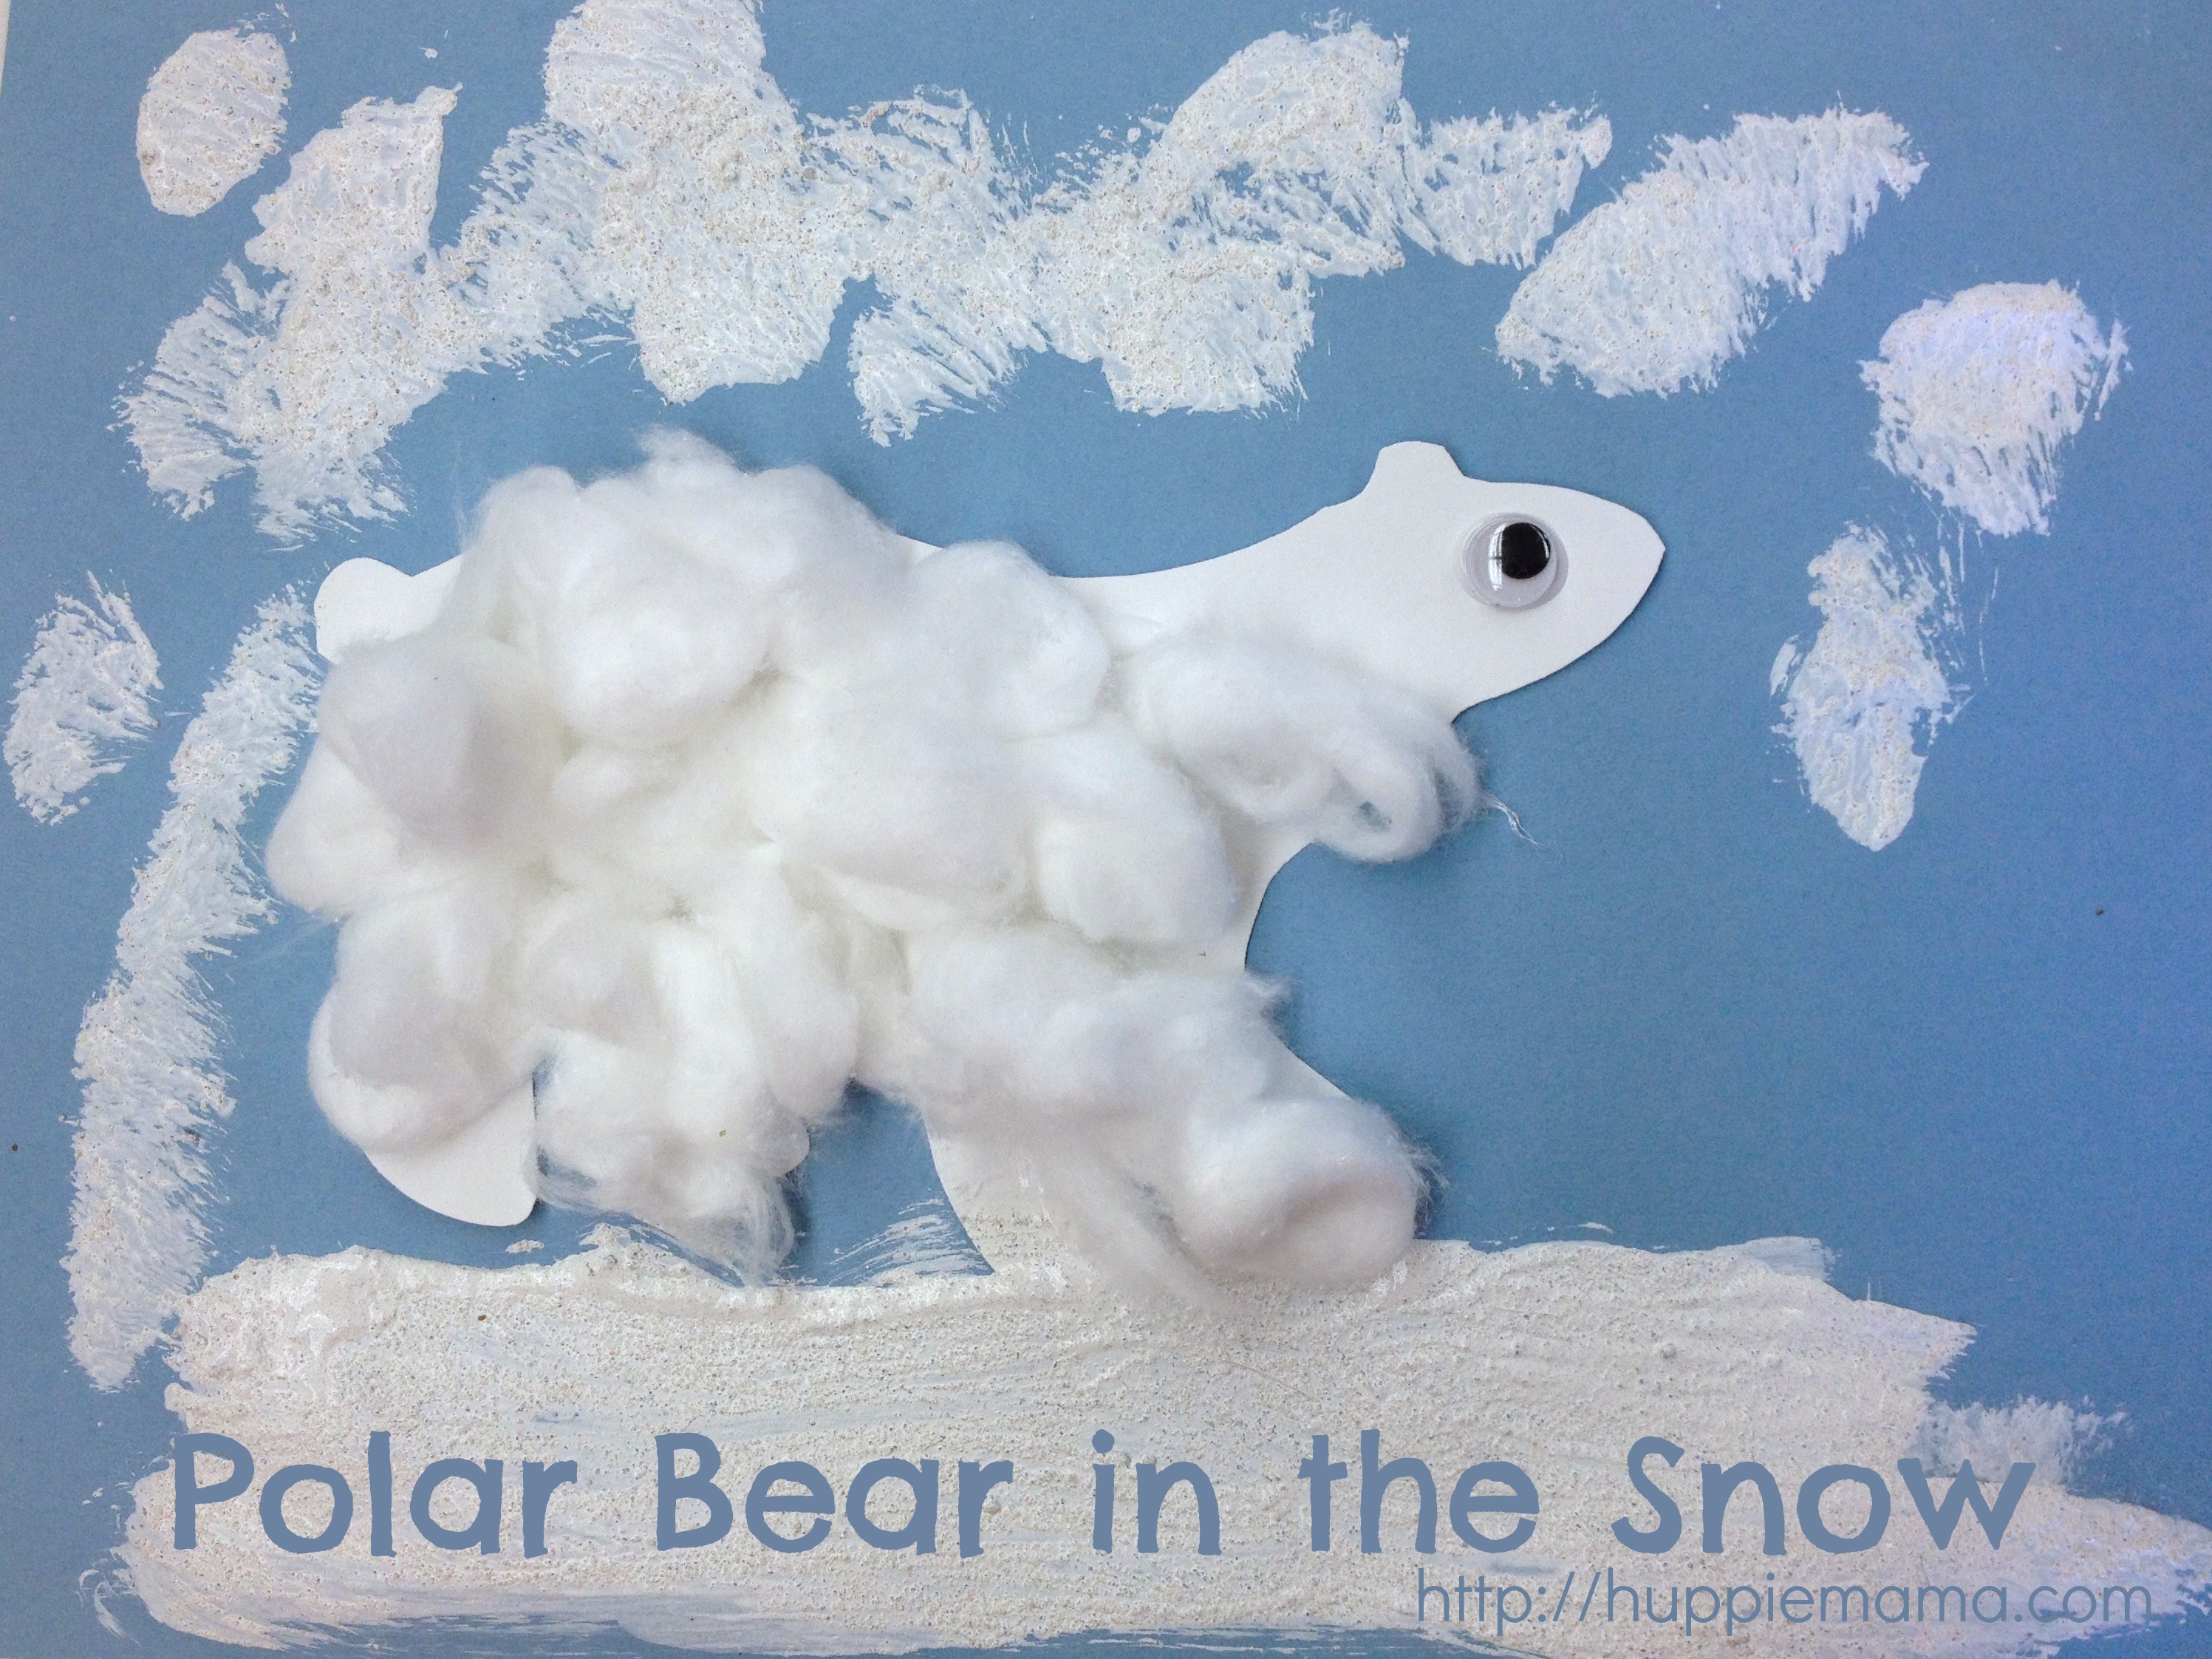 Painting in Snow Winter Activities for Preschool